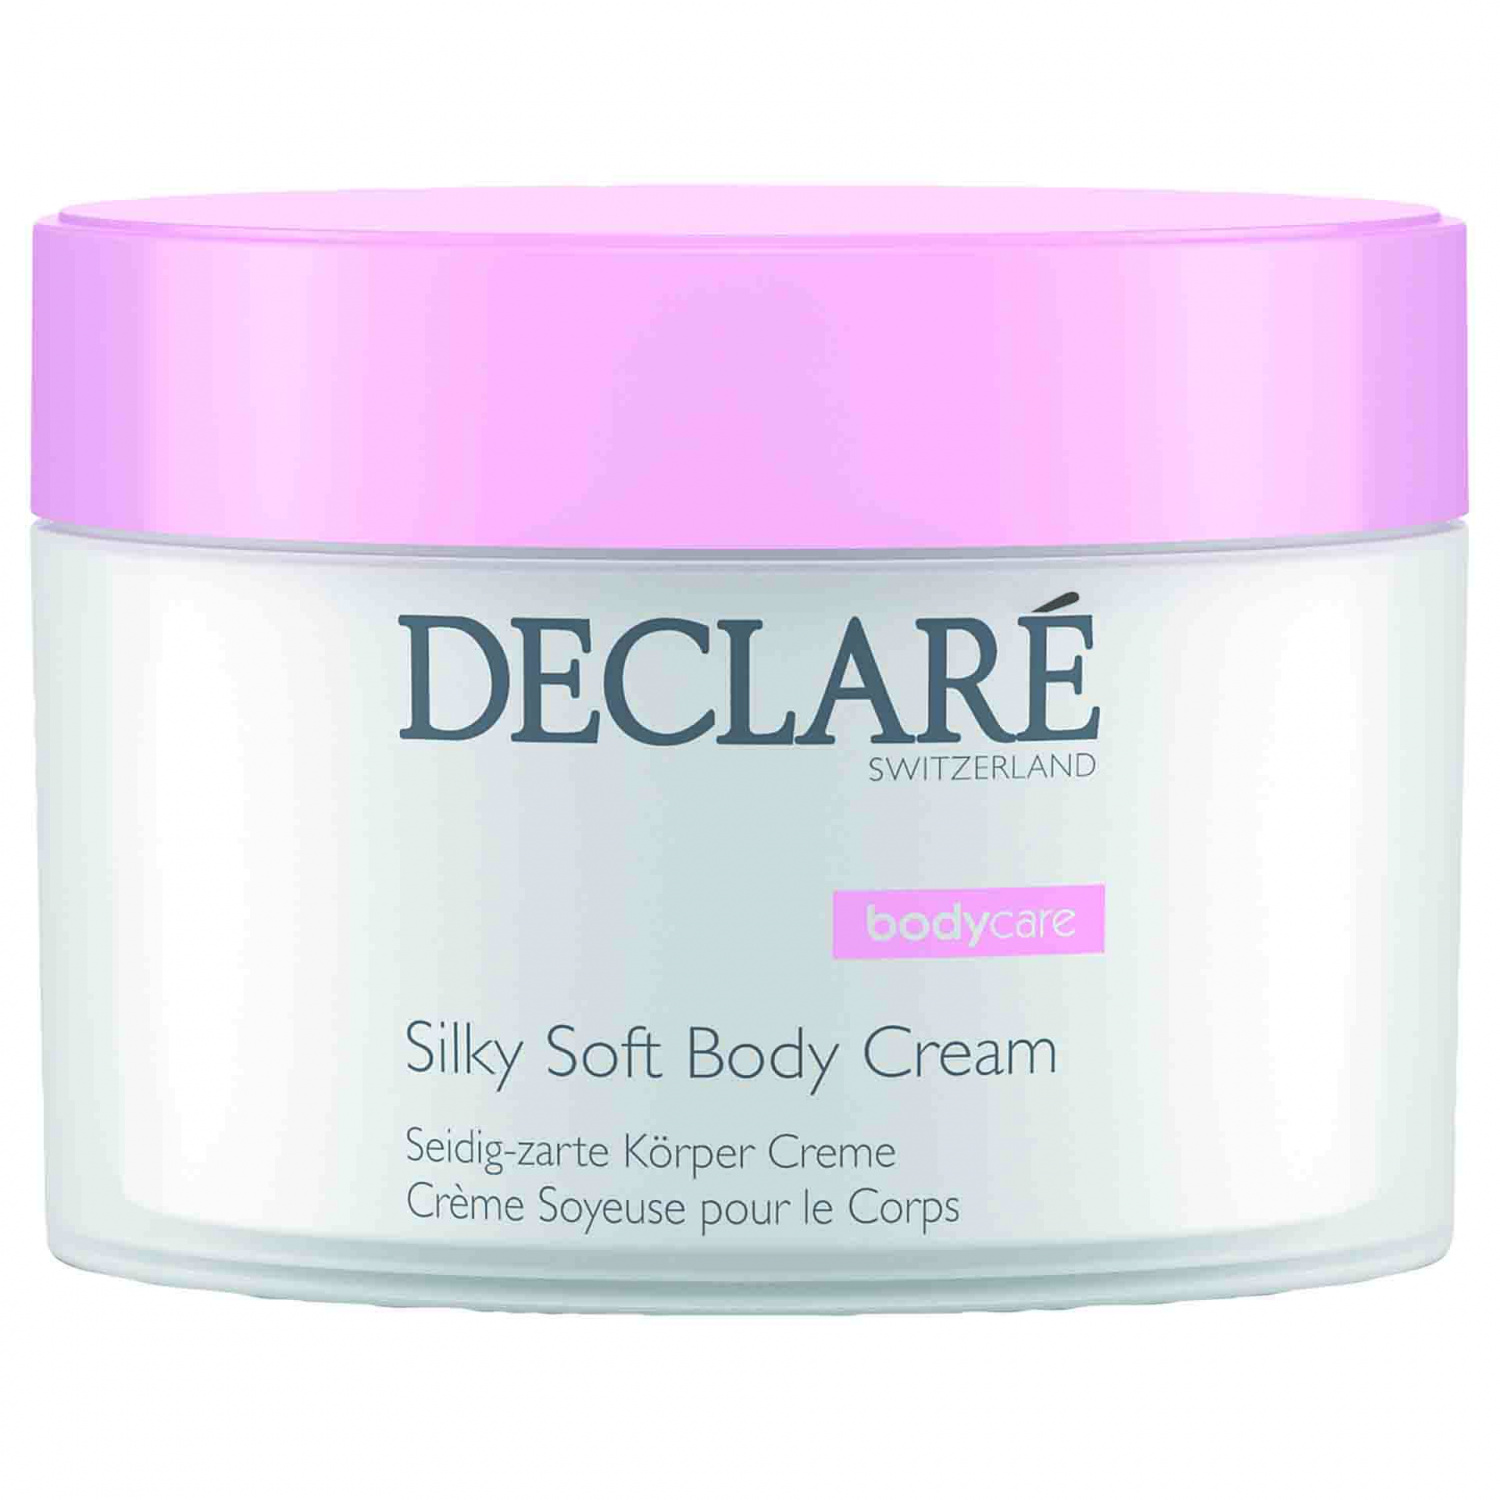 Declare Silky Soft Body Cream 200ml - интернет-магазин профессиональной косметики Spadream, изображение 30785